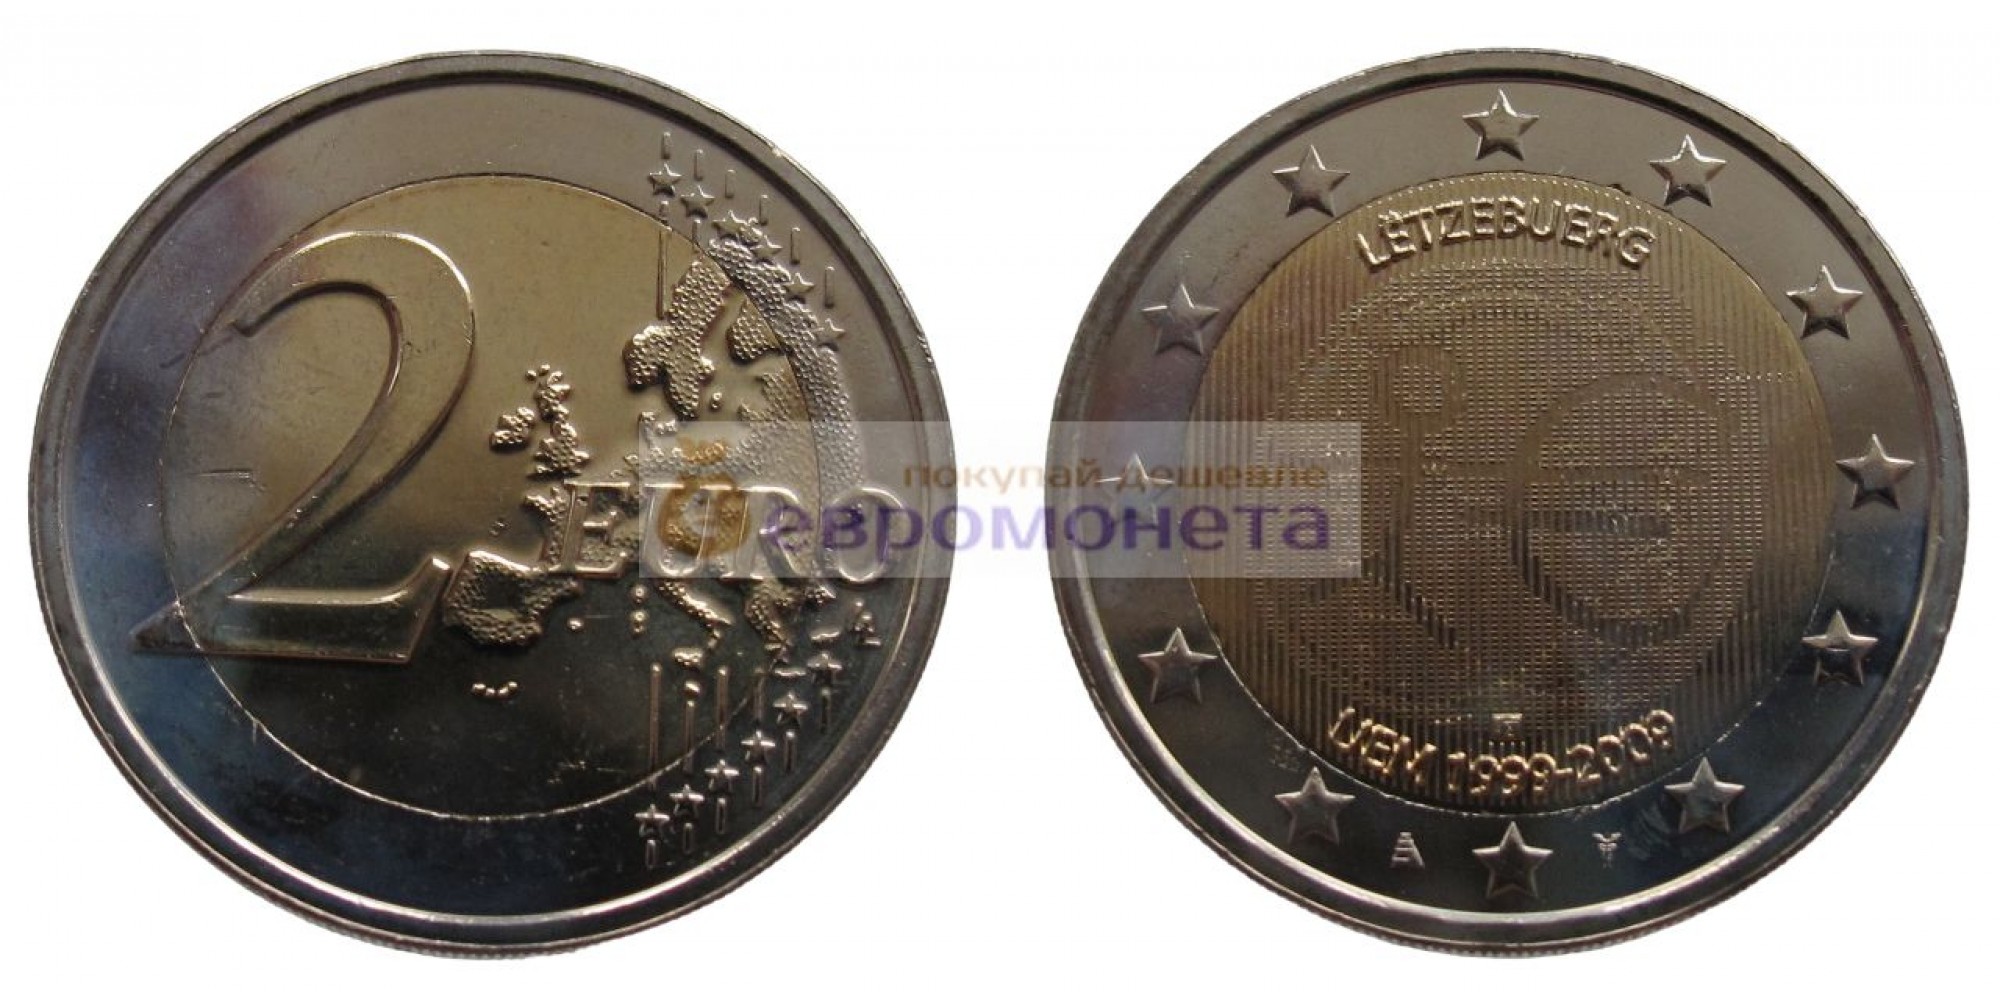 Люксембург 2 евро 2009 год 10 лет Экономическому и валютному союзу, биметалл АЦ из ролла